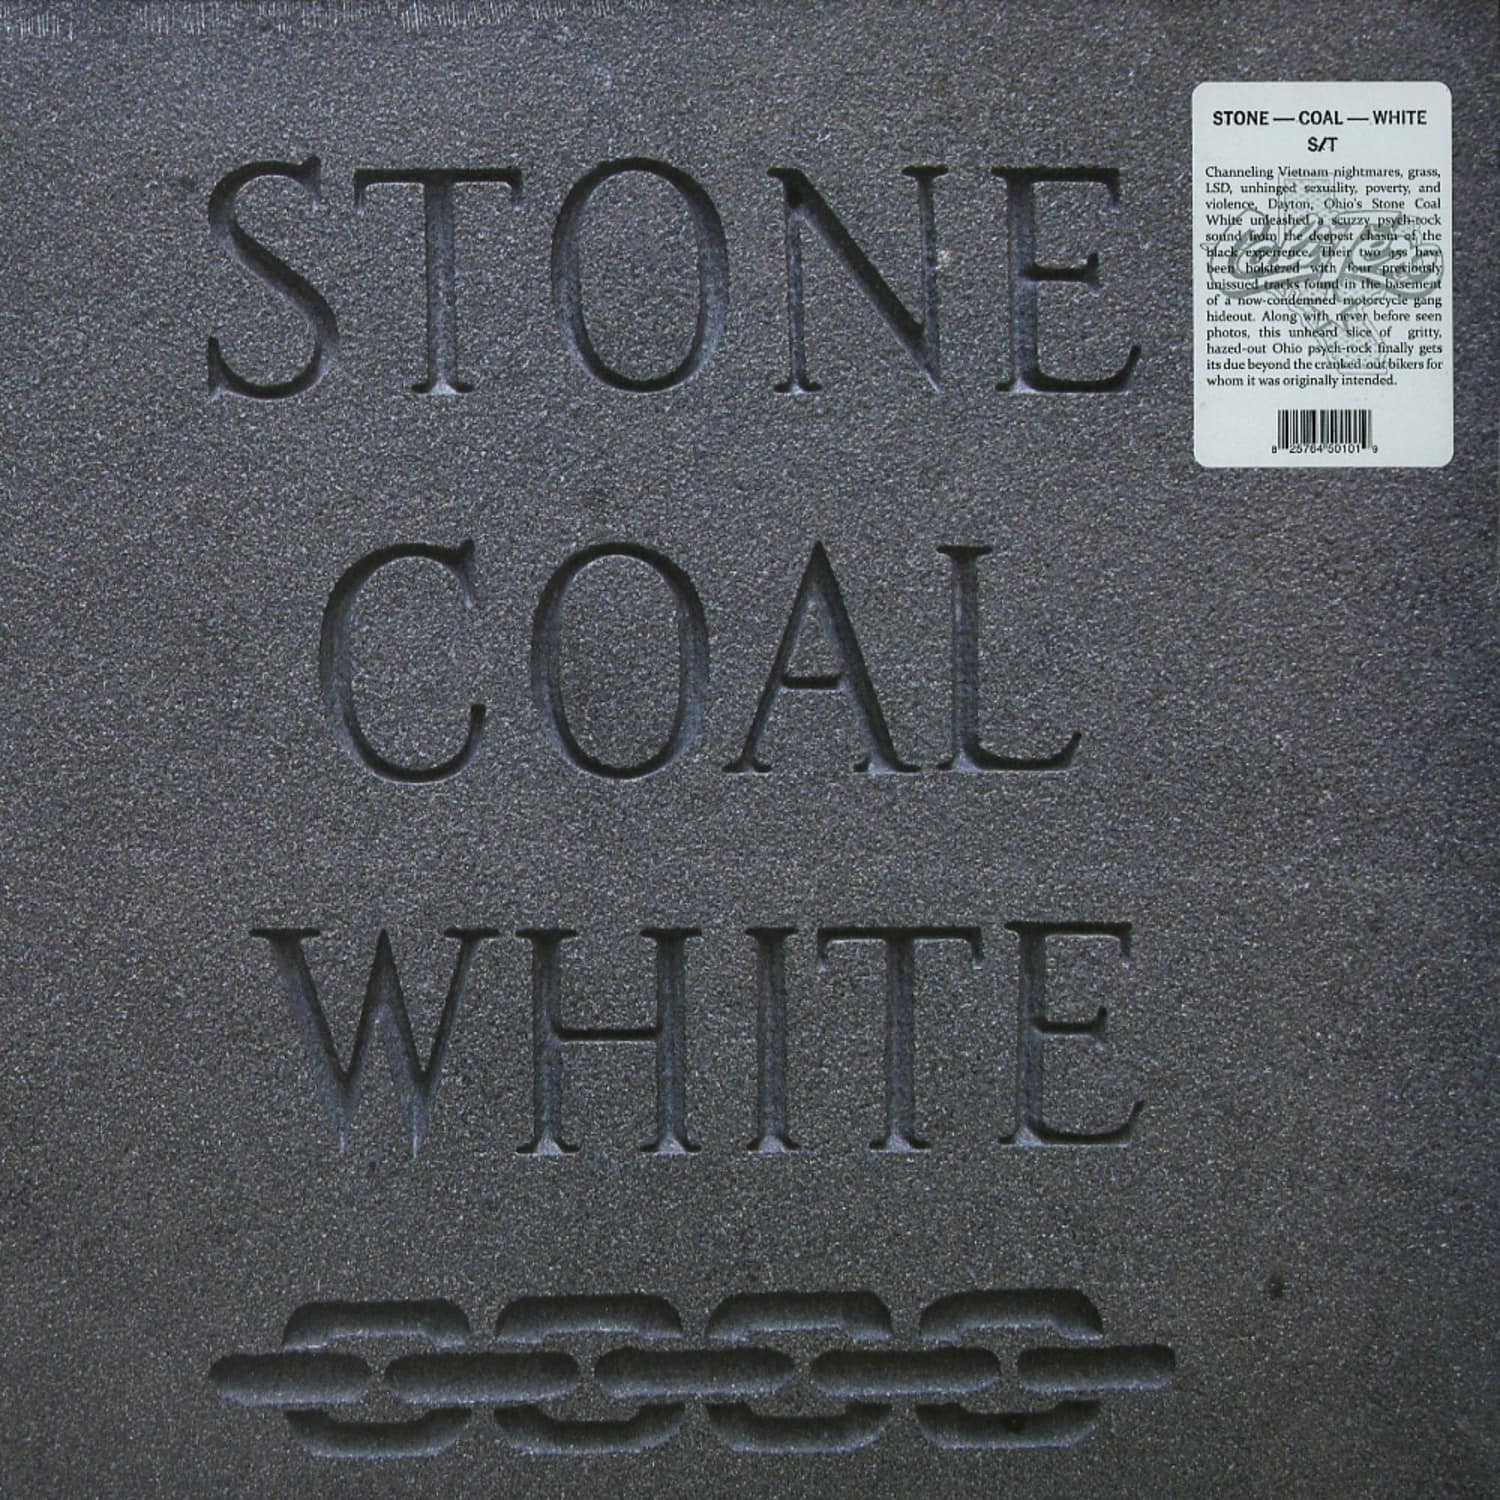 Stone Coal White - STONE COAL WHITE 